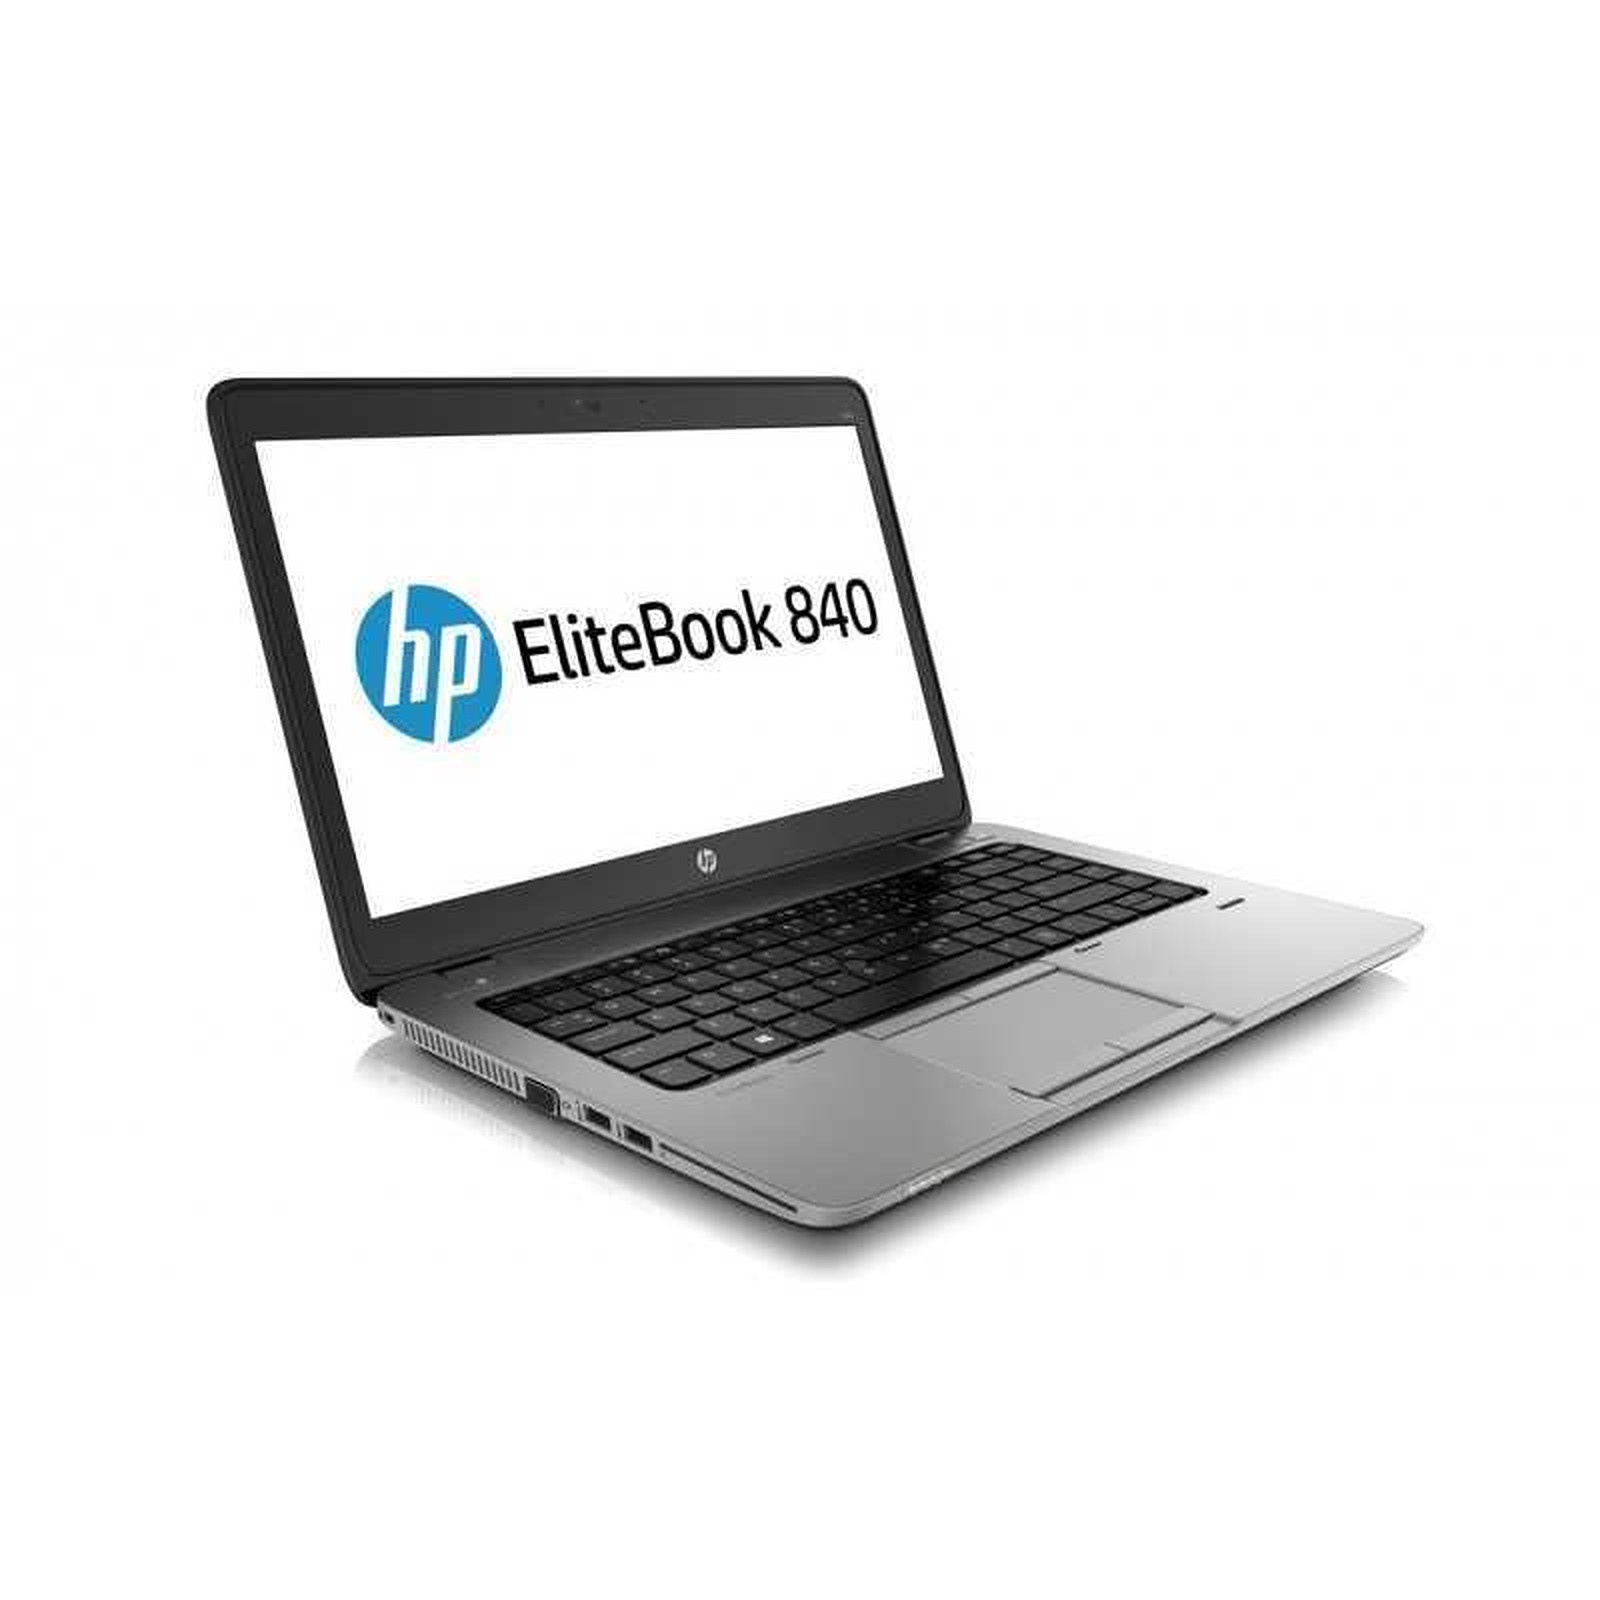 HP EliteBook 840 G1 (D1F44AV-B-1849) (D1F44AV-B) · Reconditionne - PC portable reconditionne HP